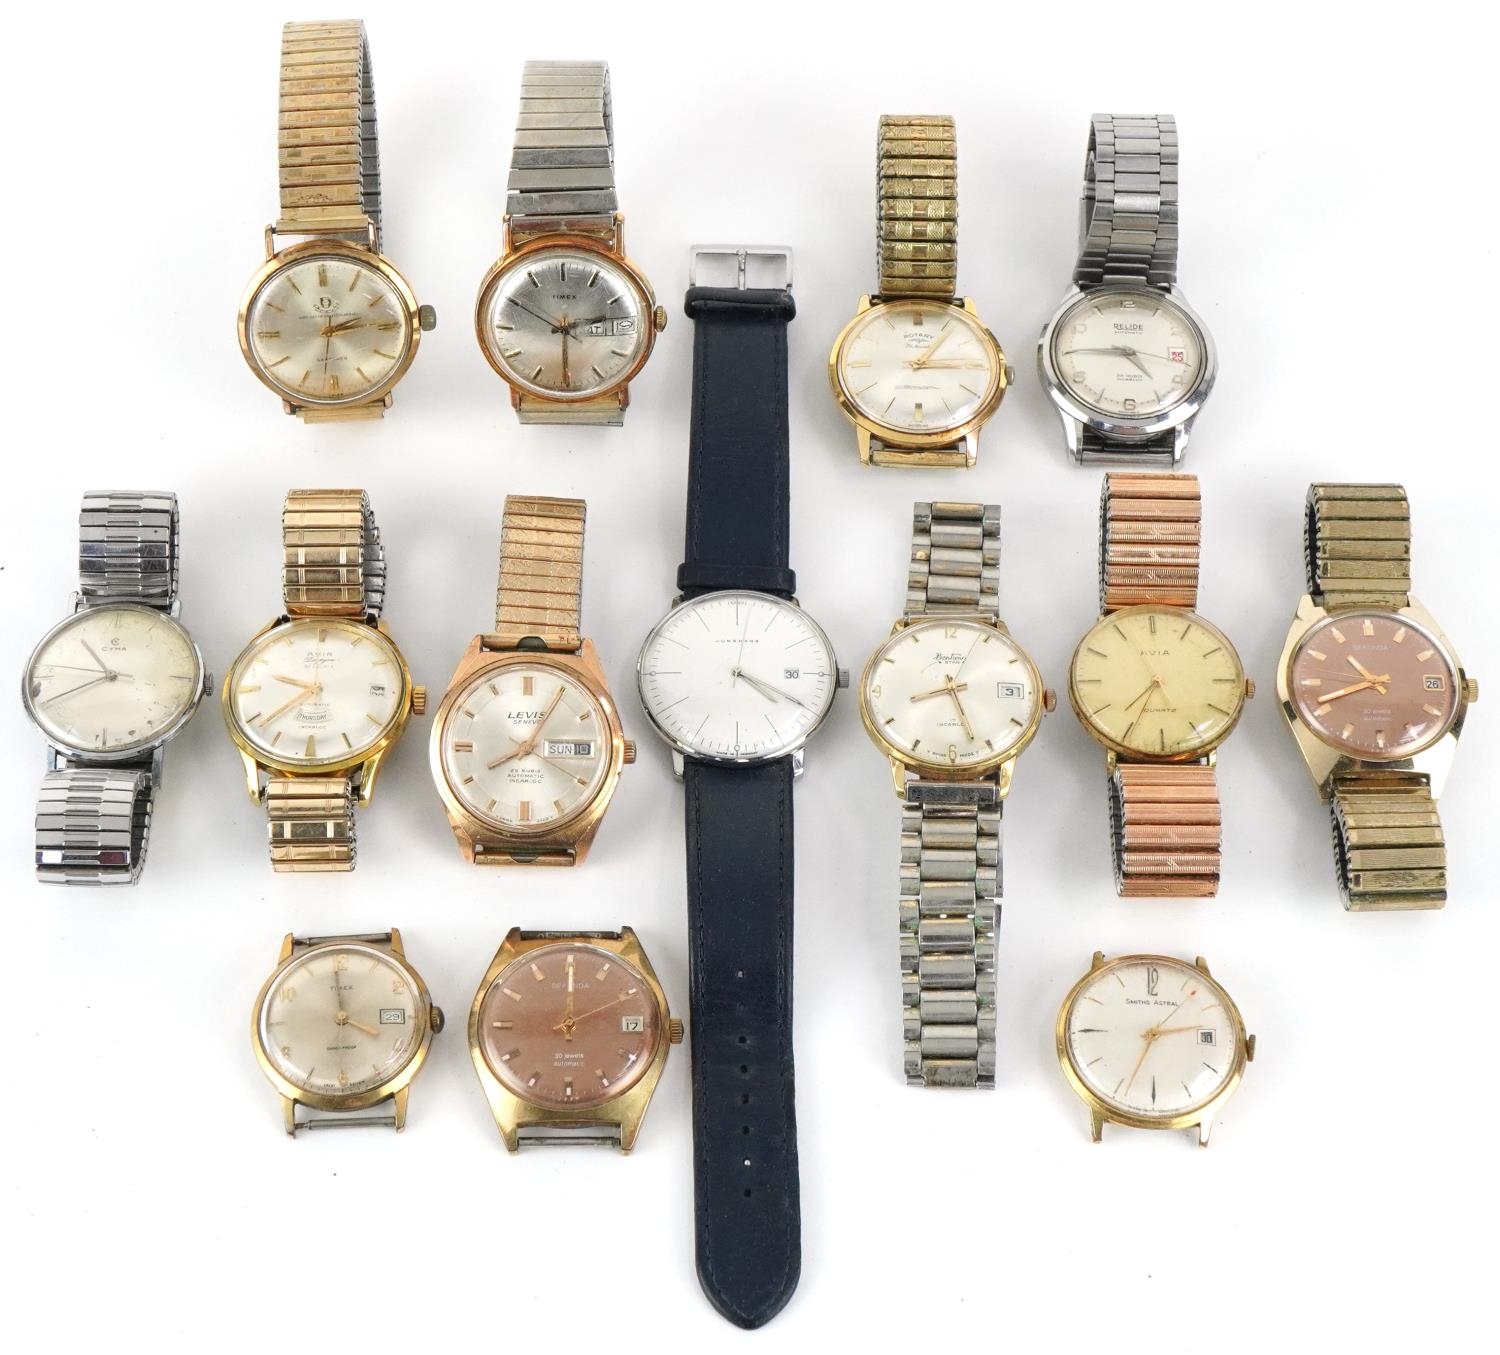 Fourteen vintage gentlemen's wristwatches including Junghans, Levis, Sekonda, Cyma, Avia, Bentima,